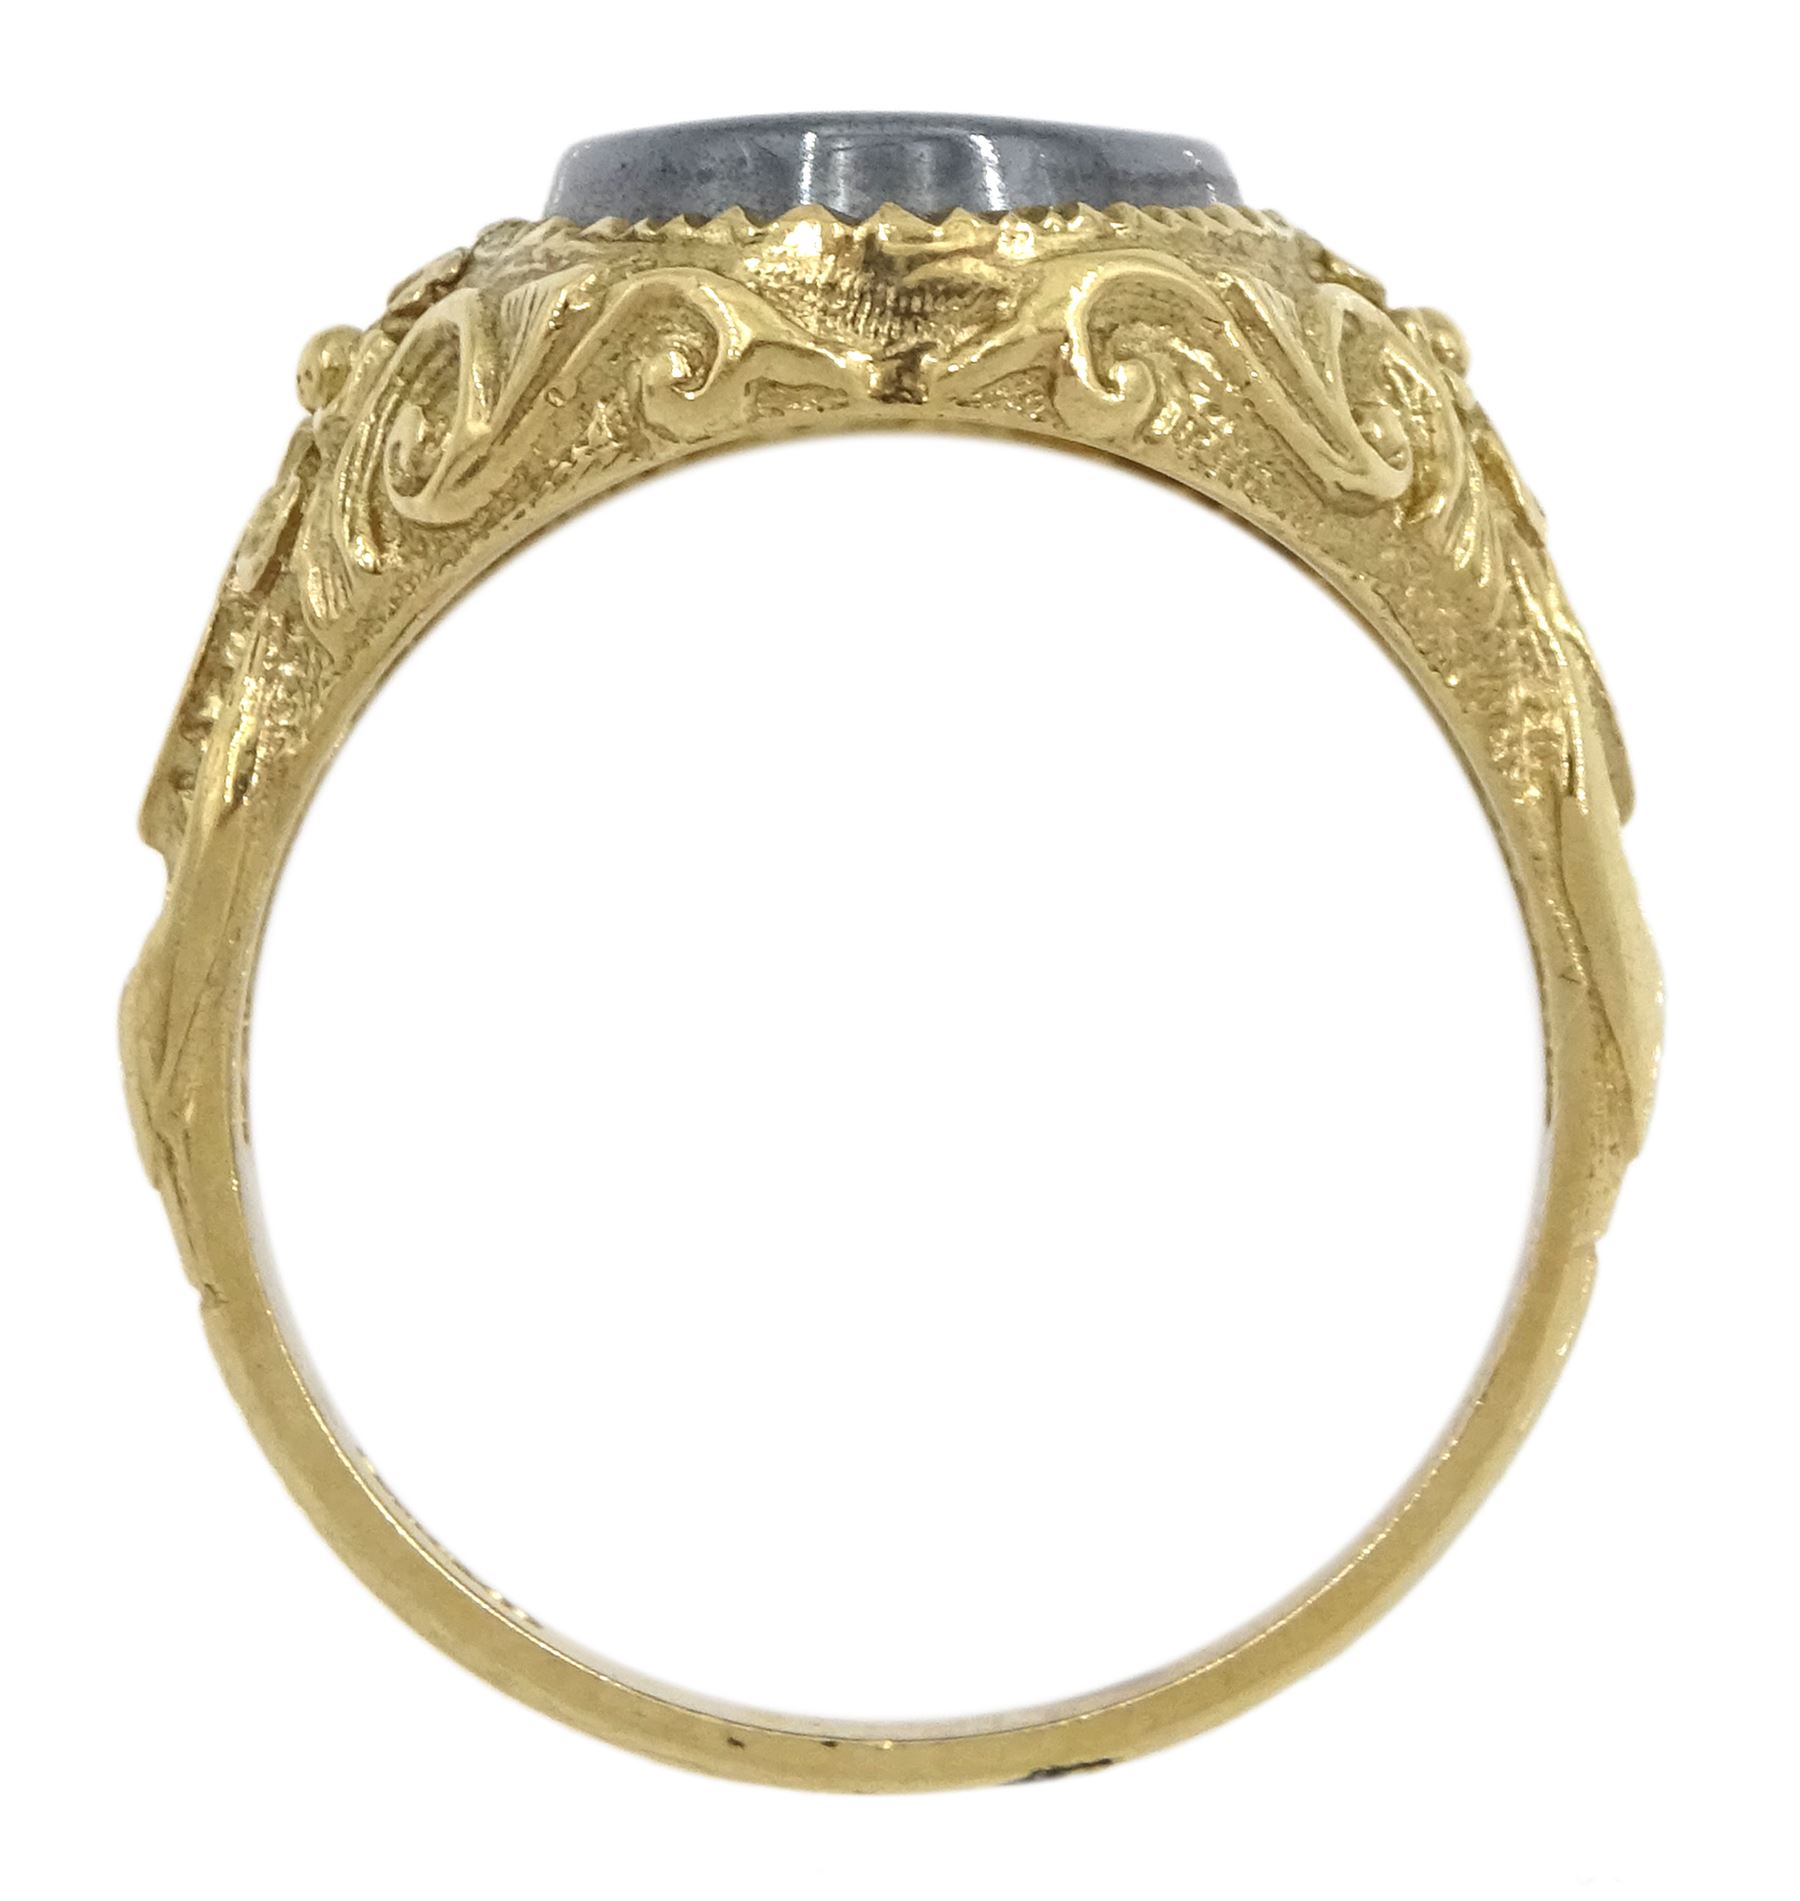 9ct gold hematite intaglio ring - Image 7 of 7